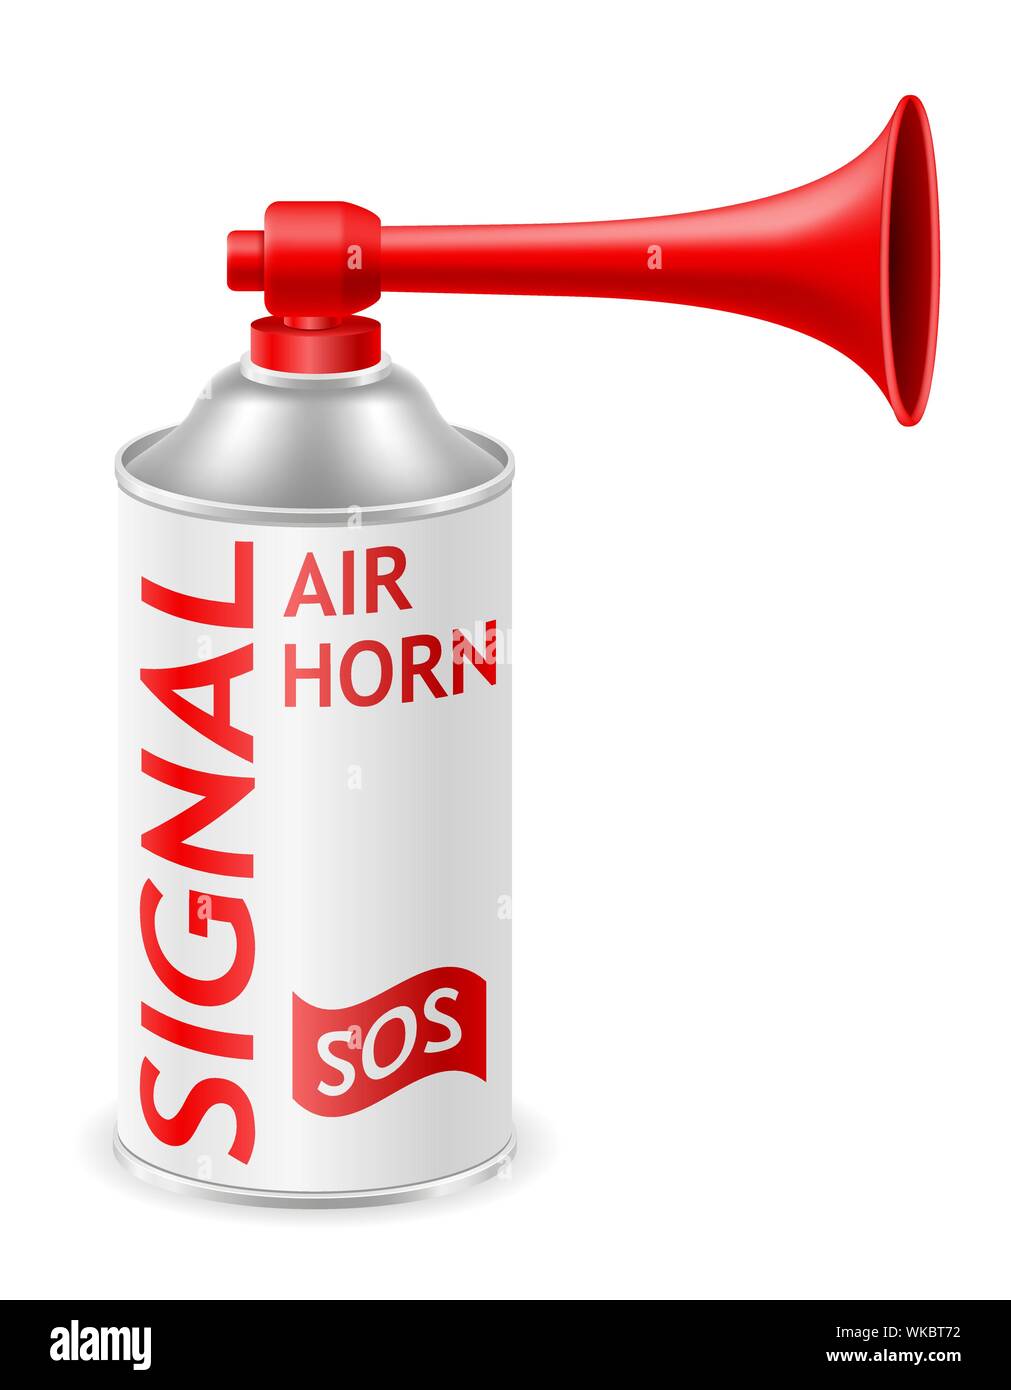 Lufthupe für sos- oder Sportsignale auf weißem Hintergrund. Signalhorn,  Tonsignal klaxon. Vektorabbildung Stock-Vektorgrafik - Alamy